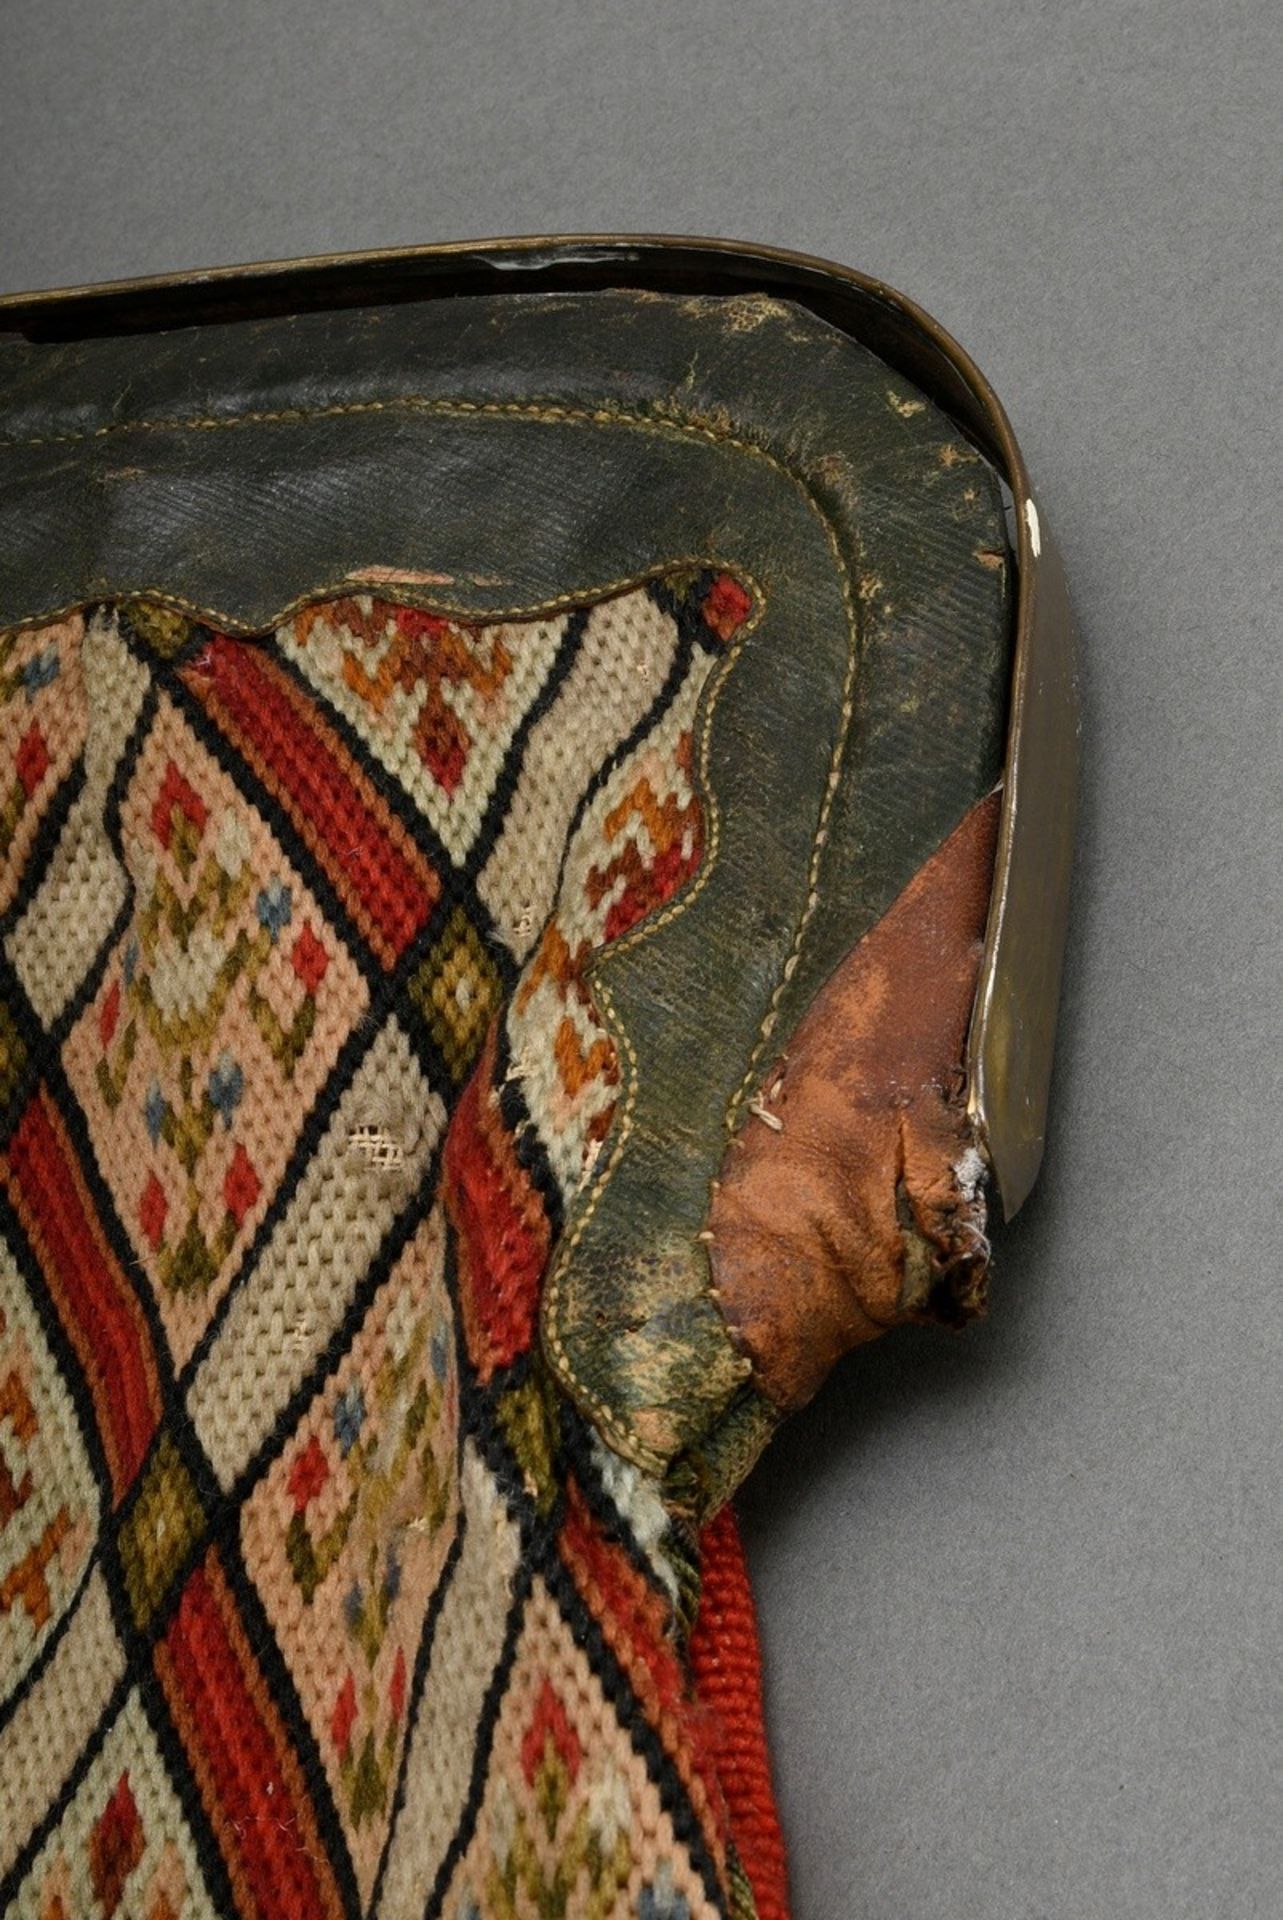 Biedermeier Reisetasche mit Messing Klappmontierung und Kreuzstich Beutel "Jagdhund", altes Klebeet - Bild 8 aus 9